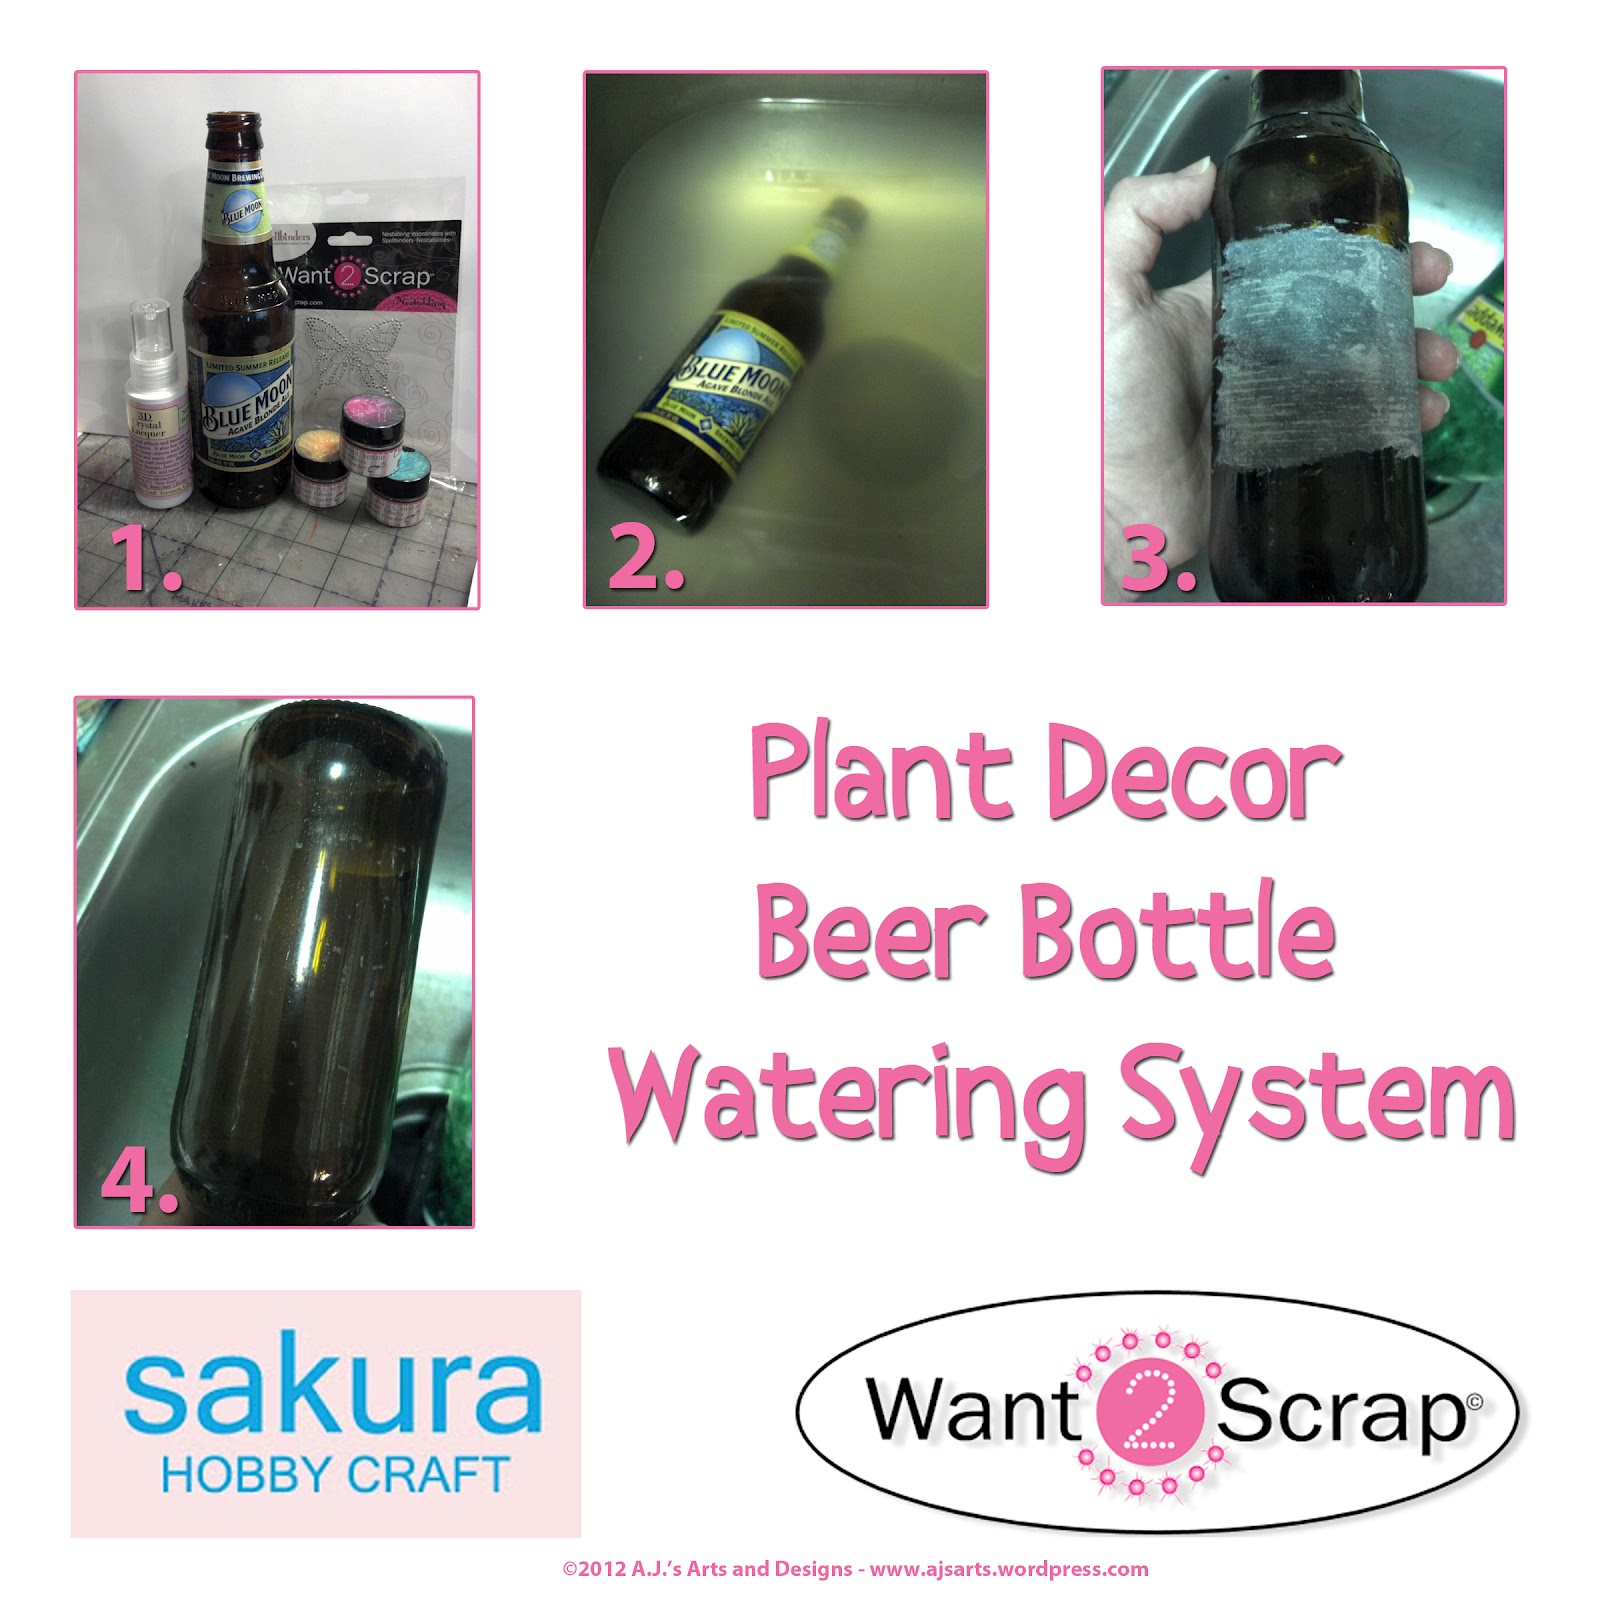 http://1.bp.blogspot.com/-H9vv9X3HWqs/T8kfkKh-G1I/AAAAAAAAF0U/D4etBdMhqs8/s1600/Sakura+Beer+Bottle+Watering+System.jpg